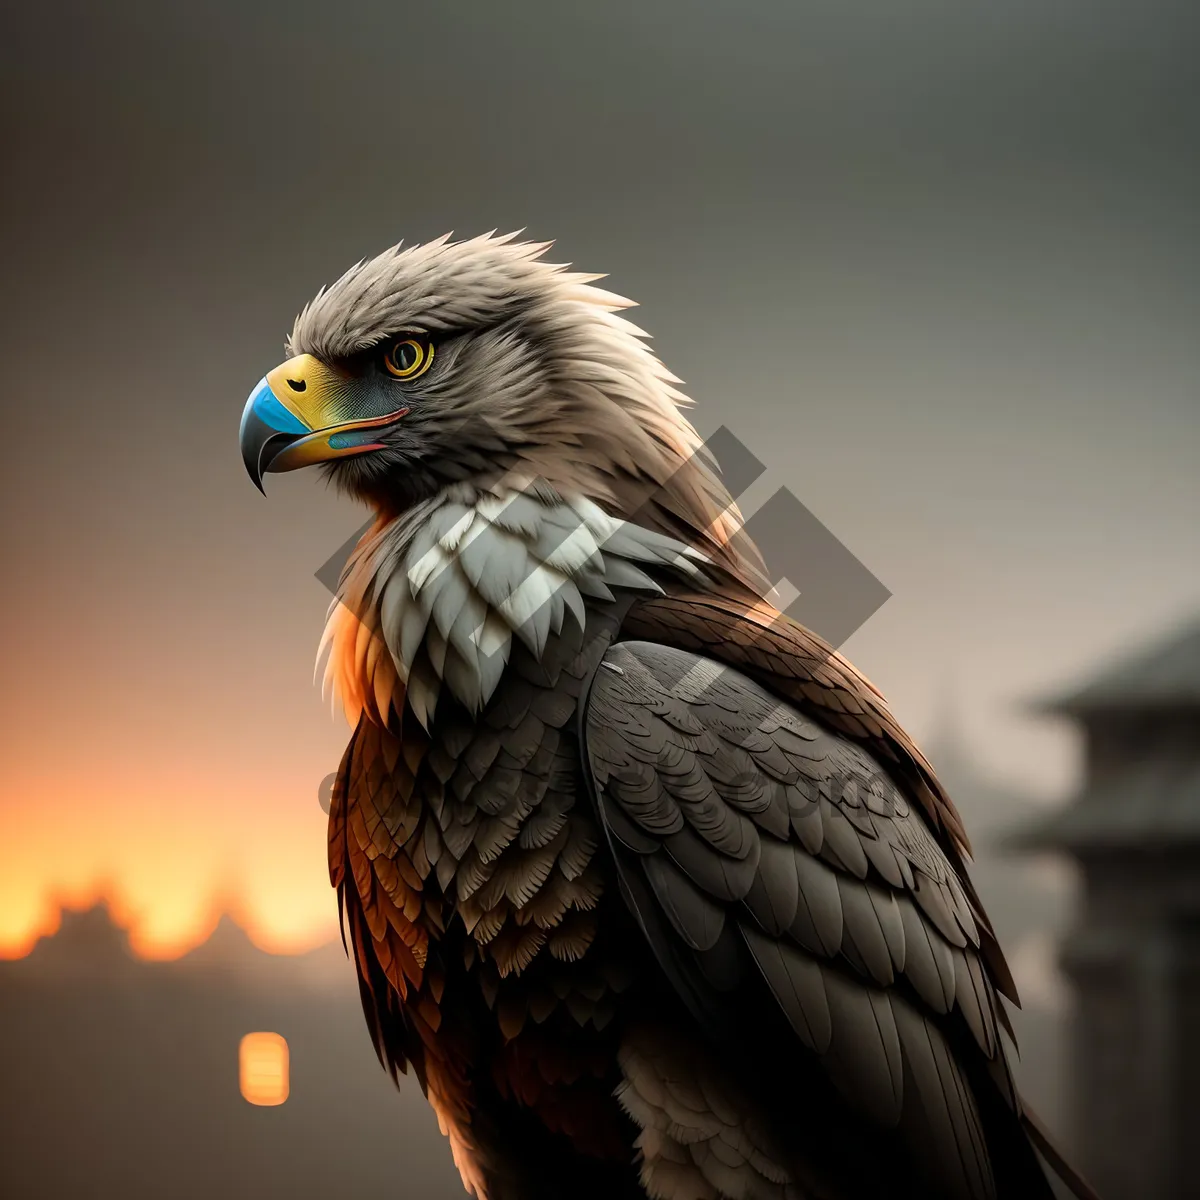 Picture of Hawk's Piercing Gaze: Majestic Predator in Flight